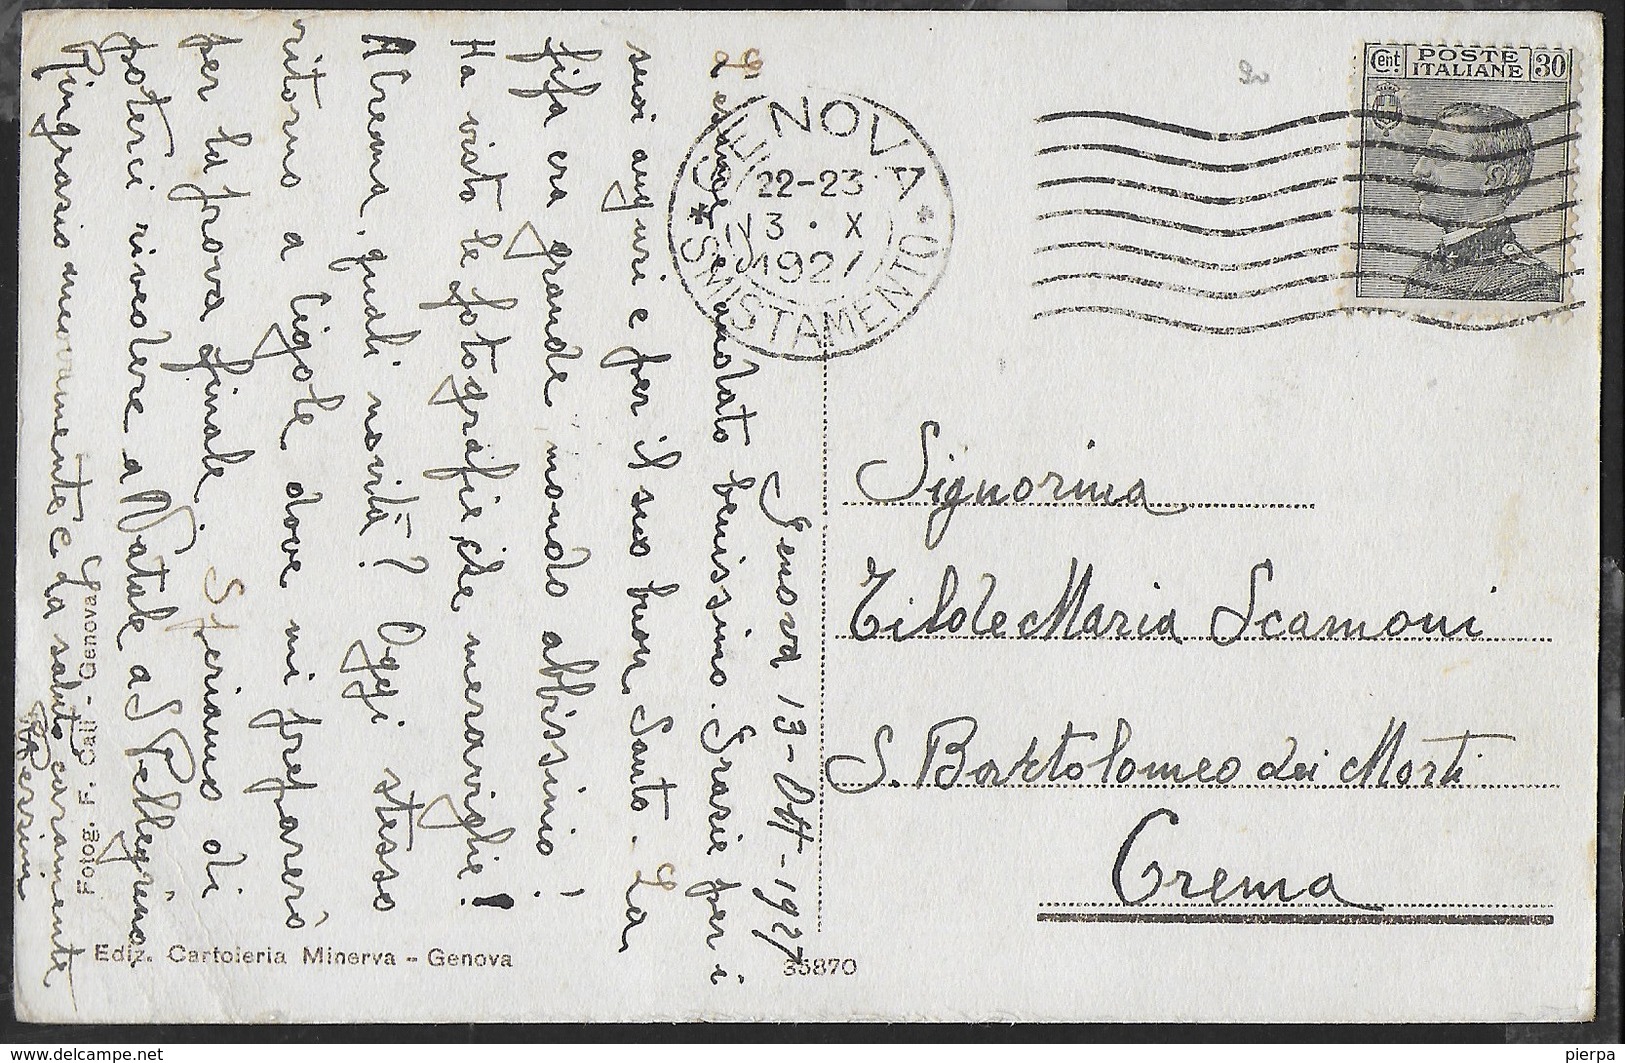 GENOVA ALBARO - REGIA SCUOLA NAVALE SUPERIORE - FORMATO PICCOLO - FOTOED. CALI' GENOVA - VIAGGIATA 1927 - Scuole